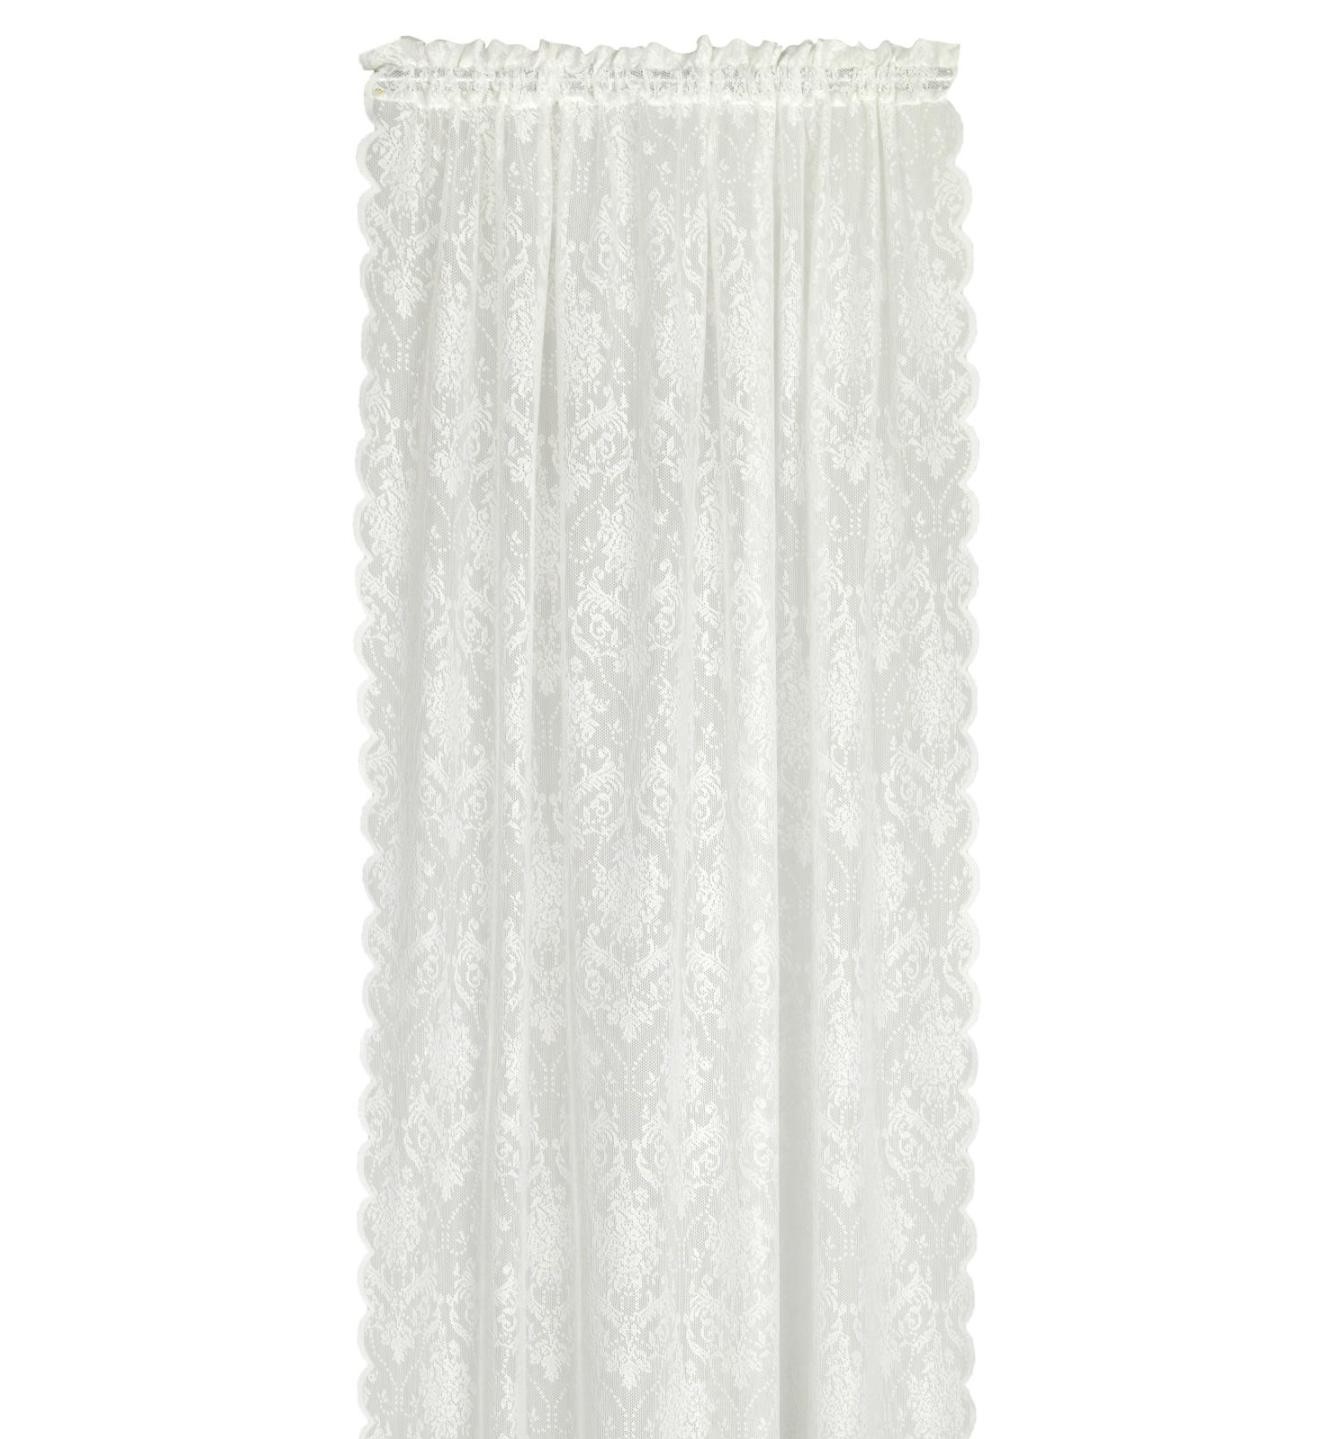 Elina lace ett spetsgardinset i off-white från Noble house med kanal